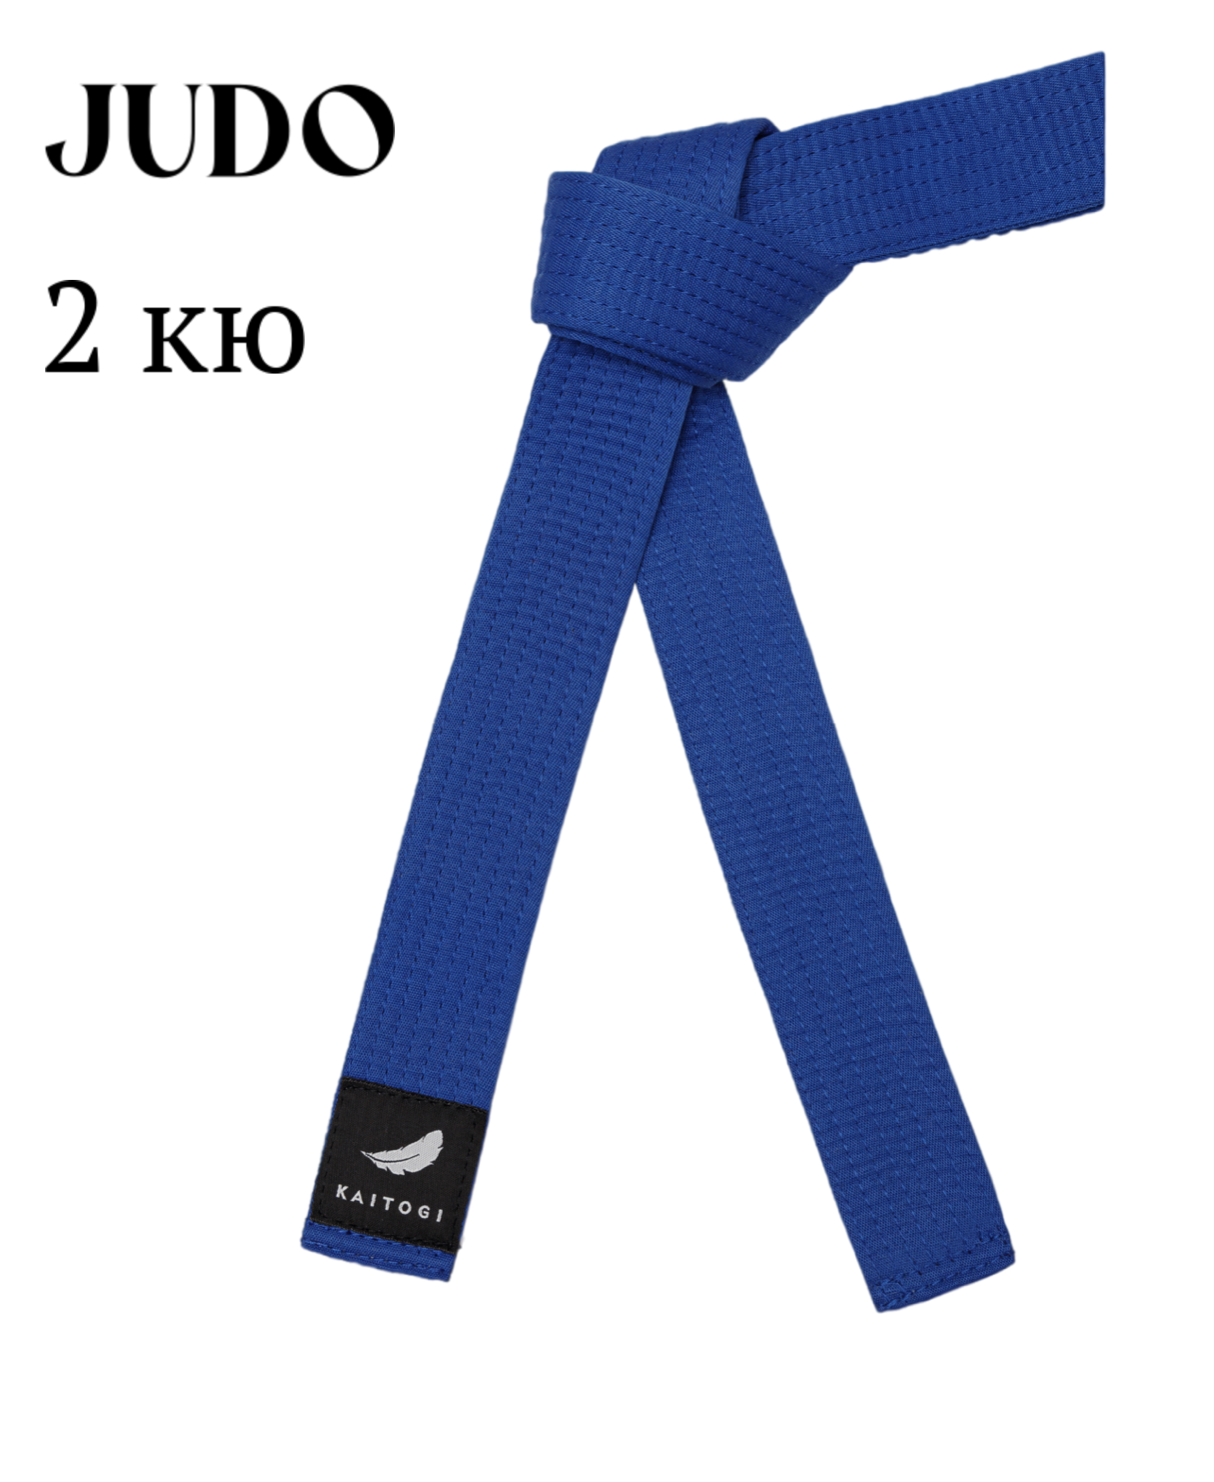 Пояс KAITOGI для дзюдо 2 кю синий 320 см